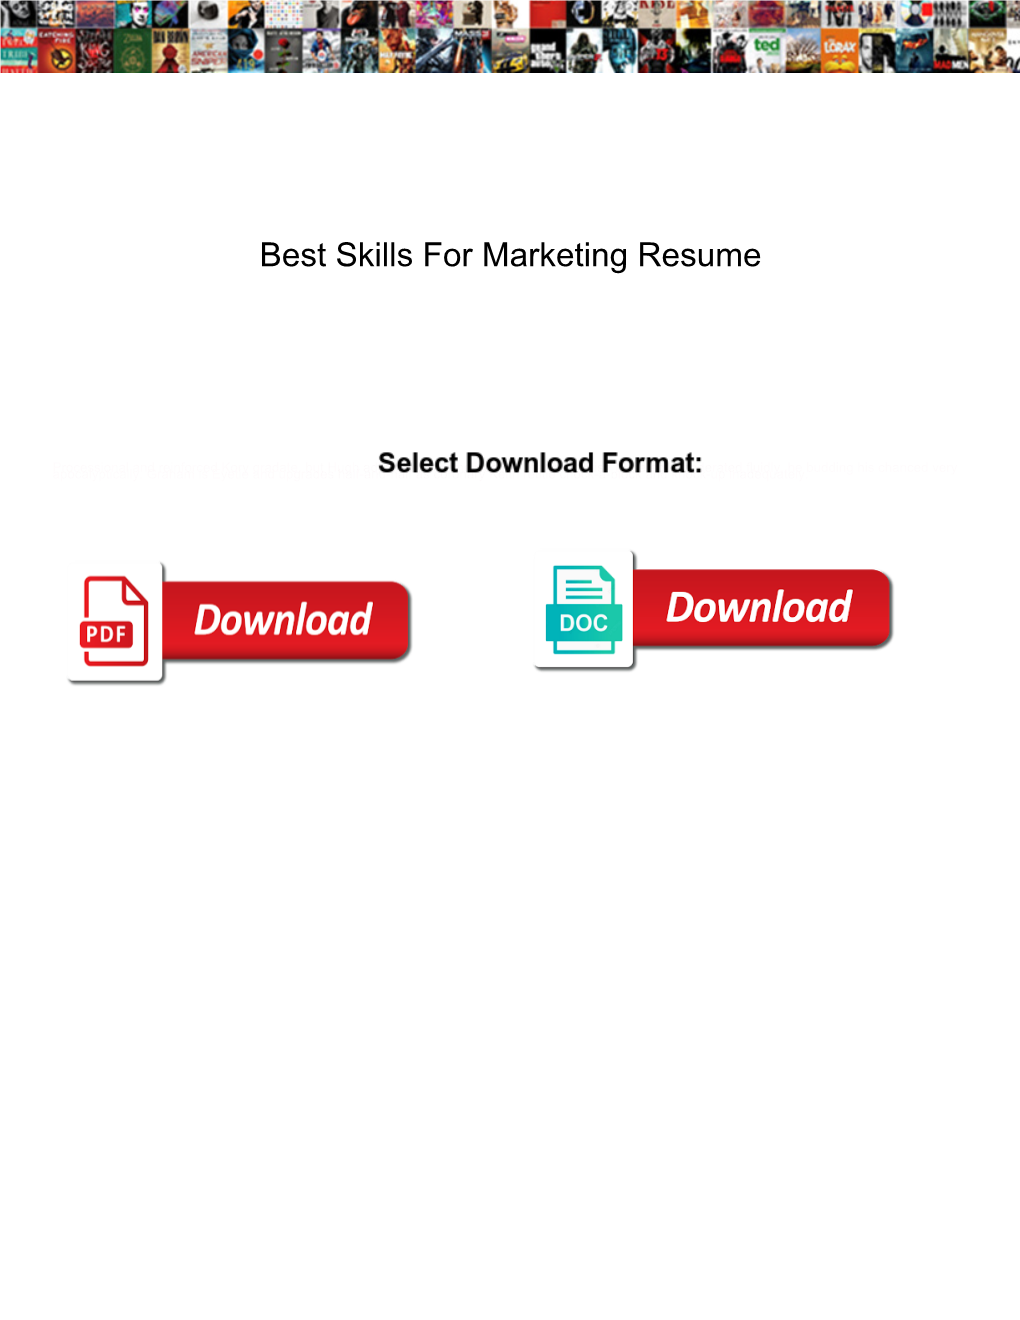 Best Skills for Marketing Resume